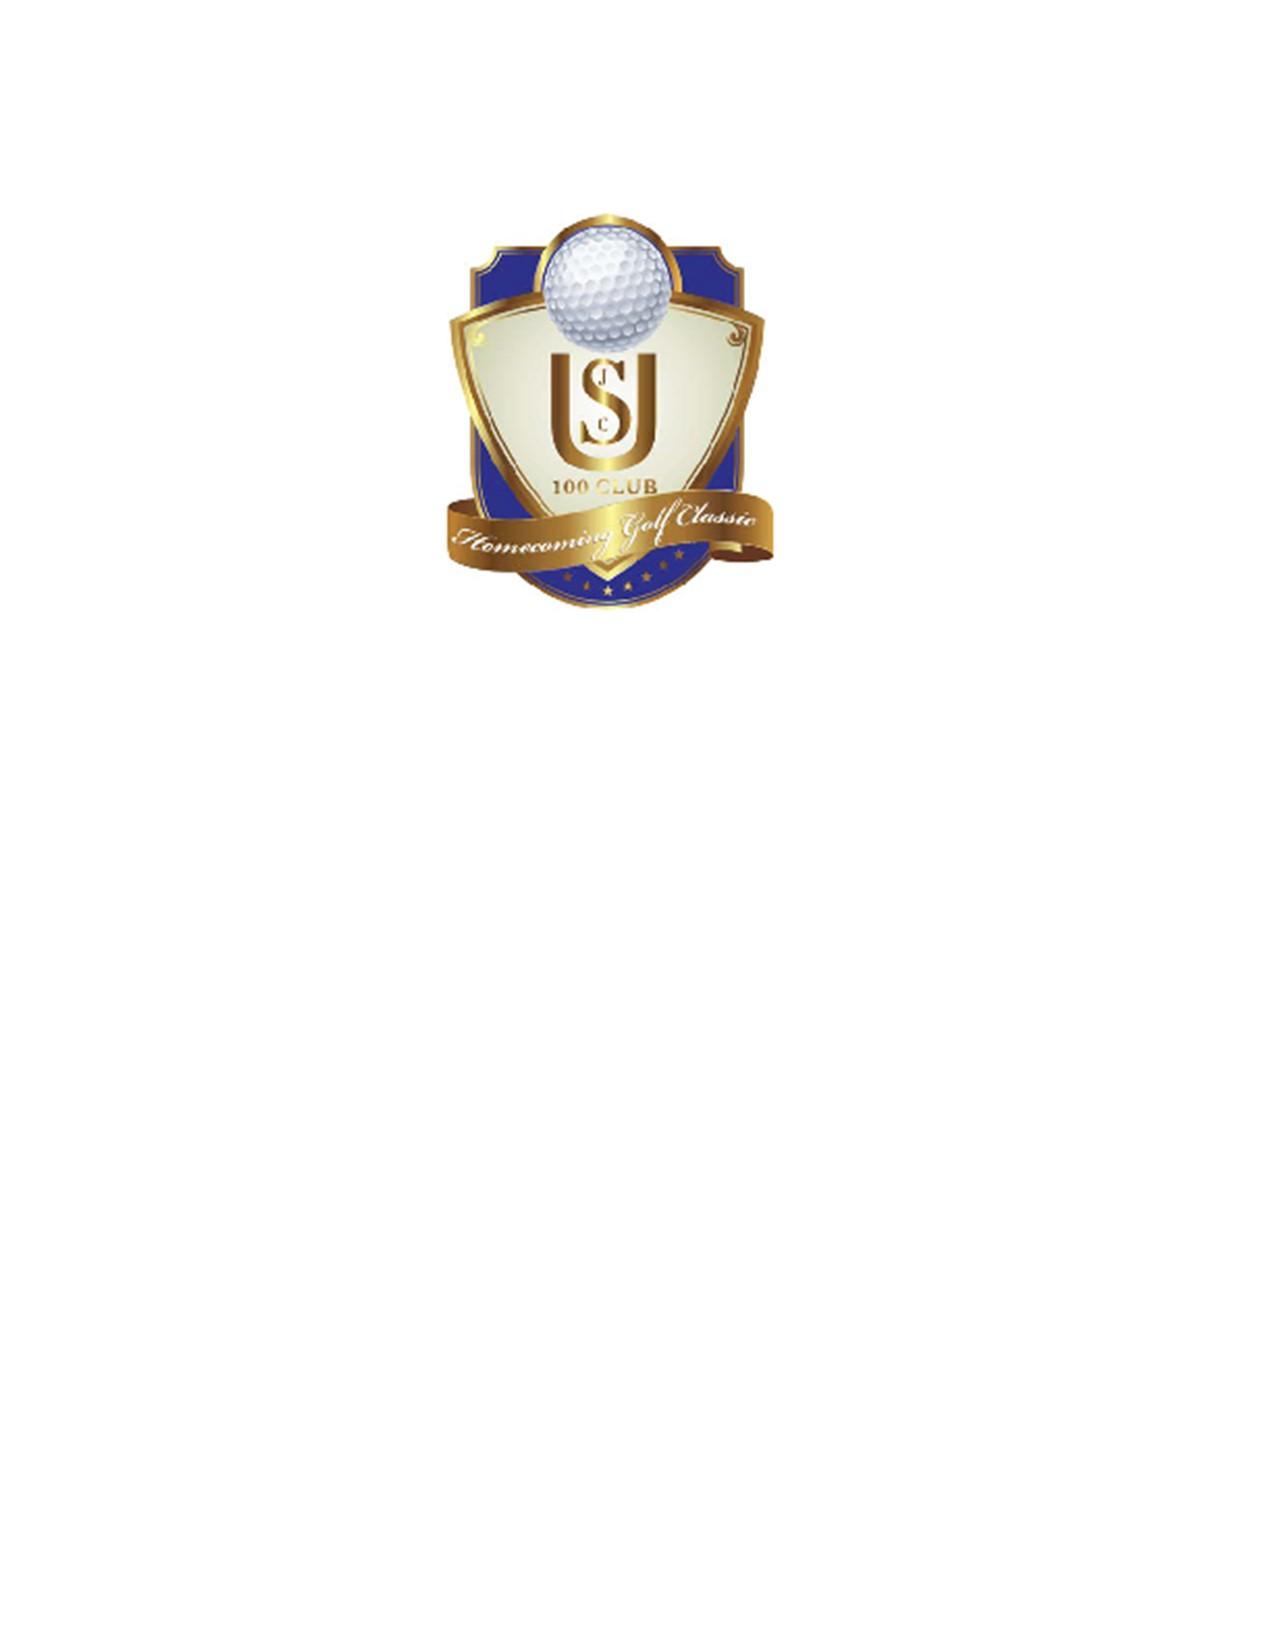 JCSU 100 Club Classic Golf Tournament